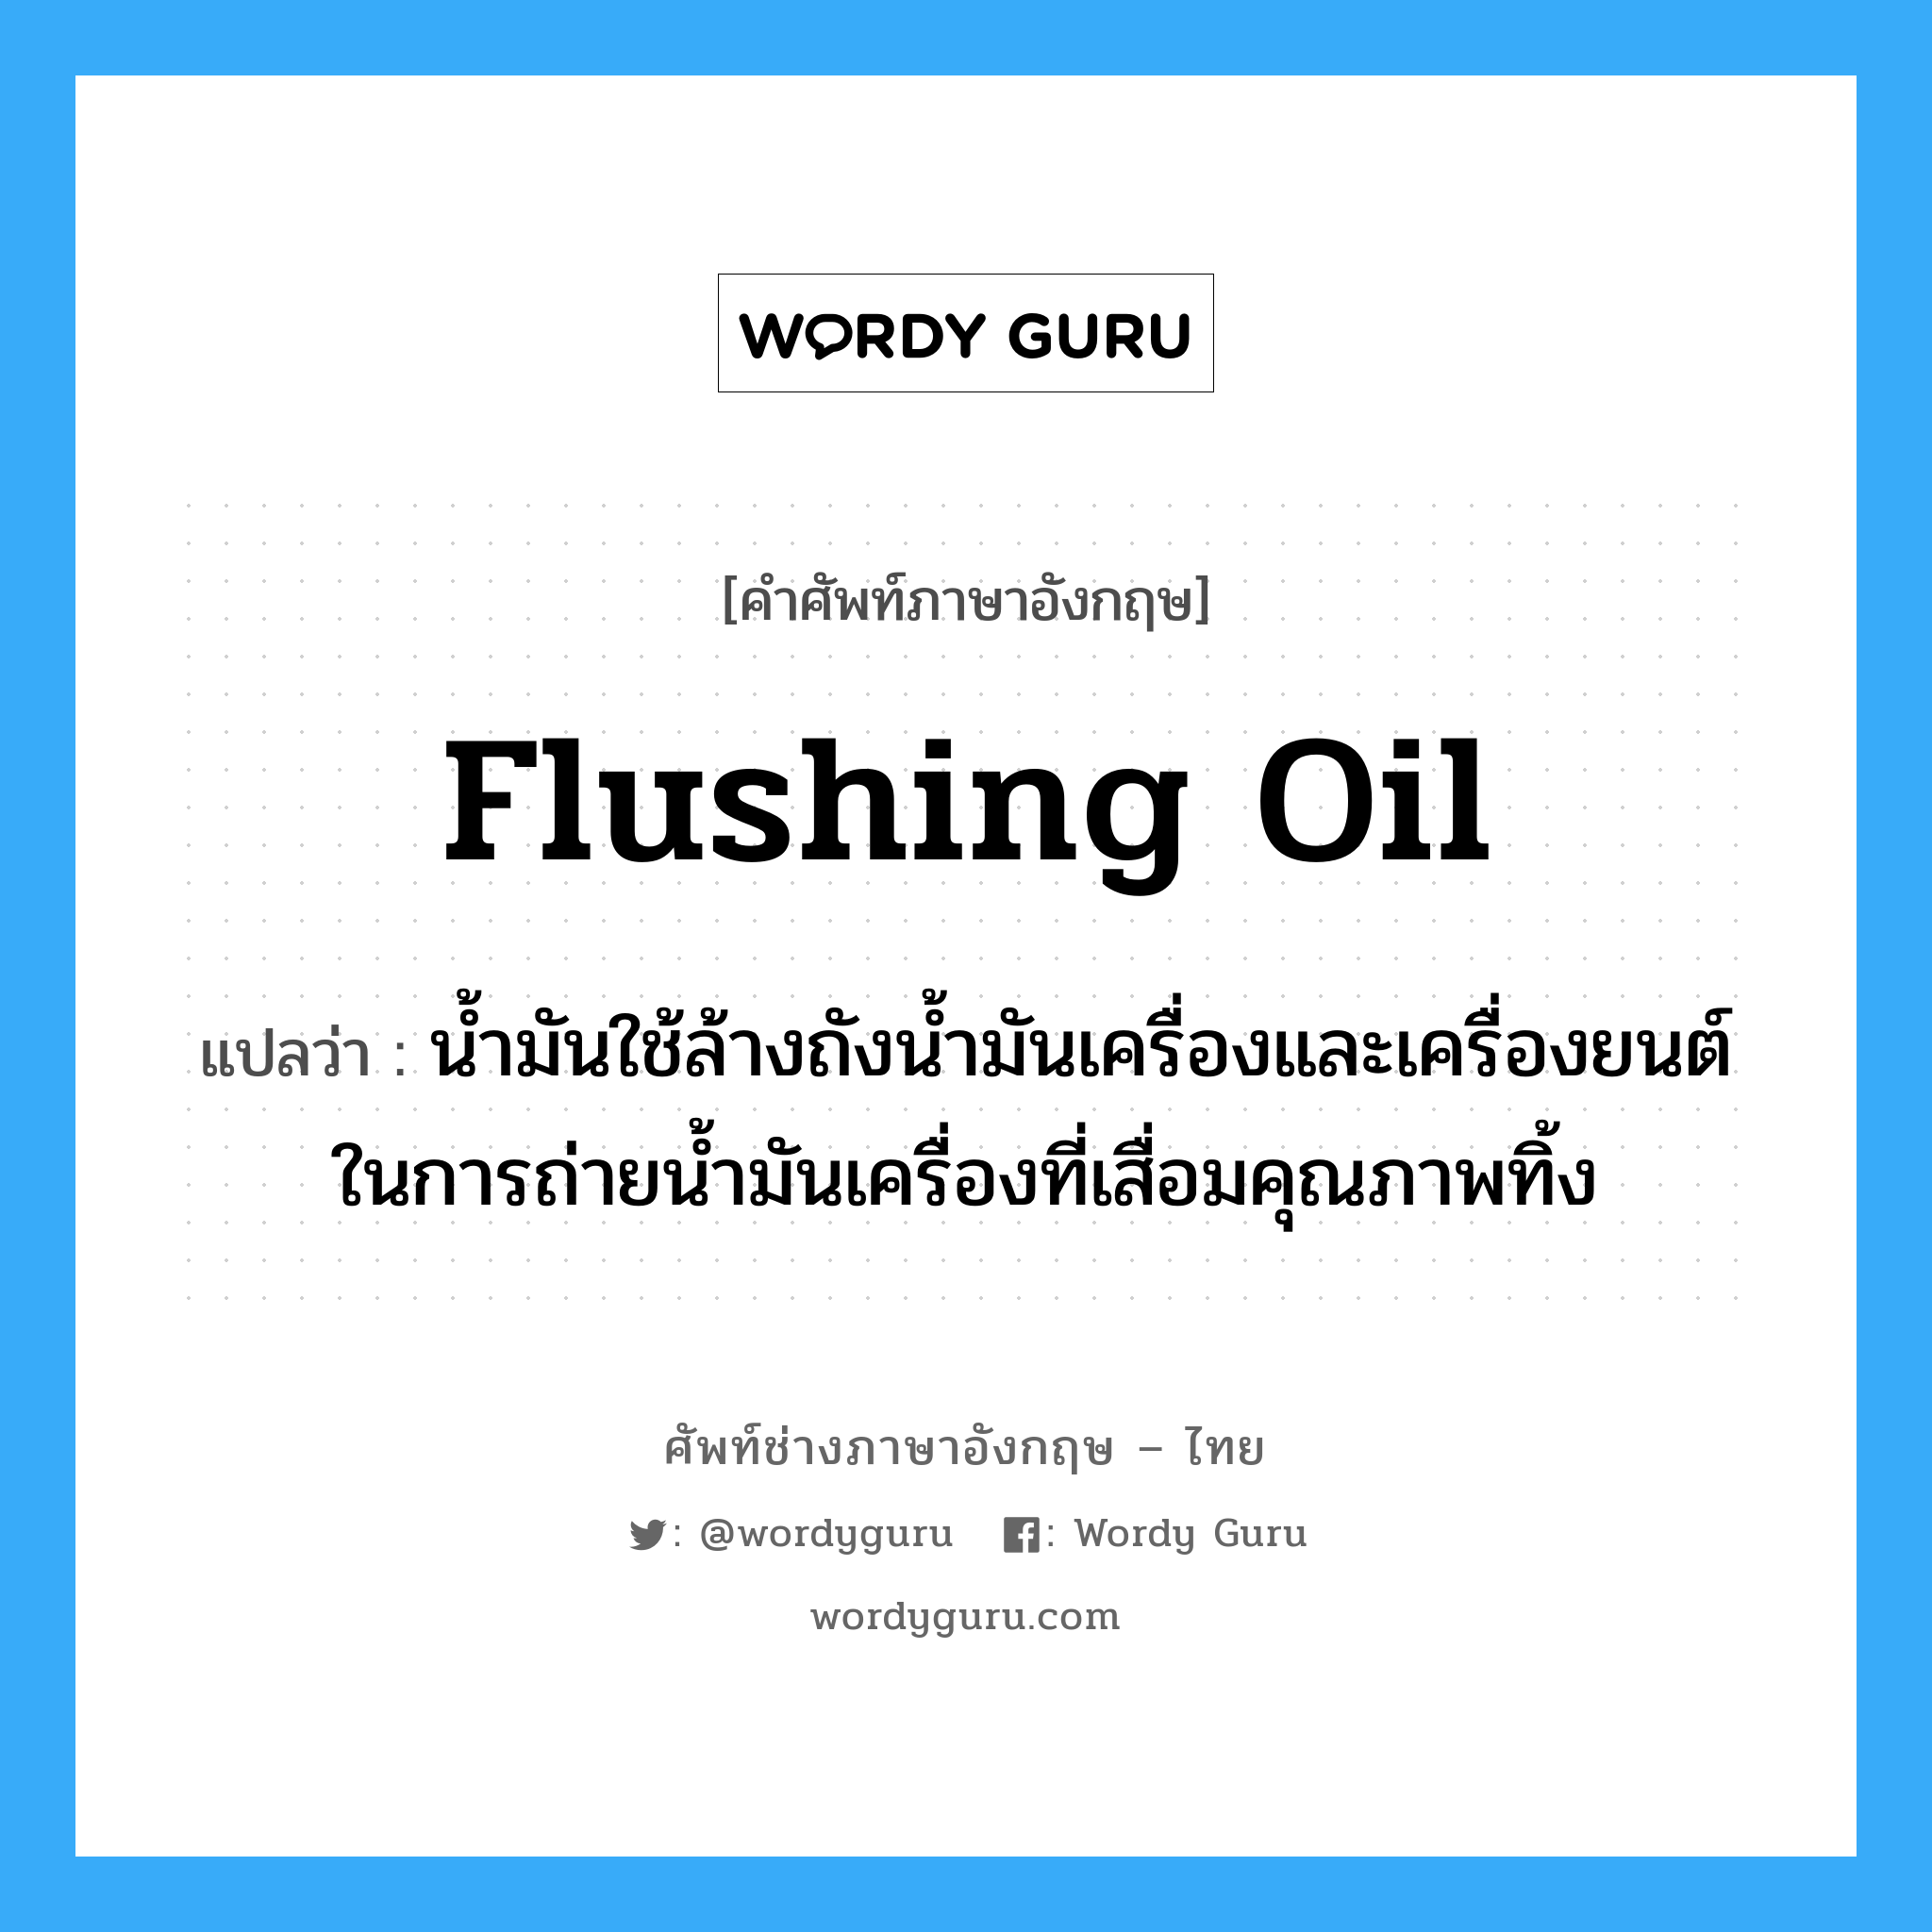 flushing oil แปลว่า?, คำศัพท์ช่างภาษาอังกฤษ - ไทย flushing oil คำศัพท์ภาษาอังกฤษ flushing oil แปลว่า น้ำมันใช้ล้างถังน้ำมันเครื่องและเครื่องยนต์ในการถ่ายน้ำมันเครื่องที่เสื่อมคุณภาพทิ้ง